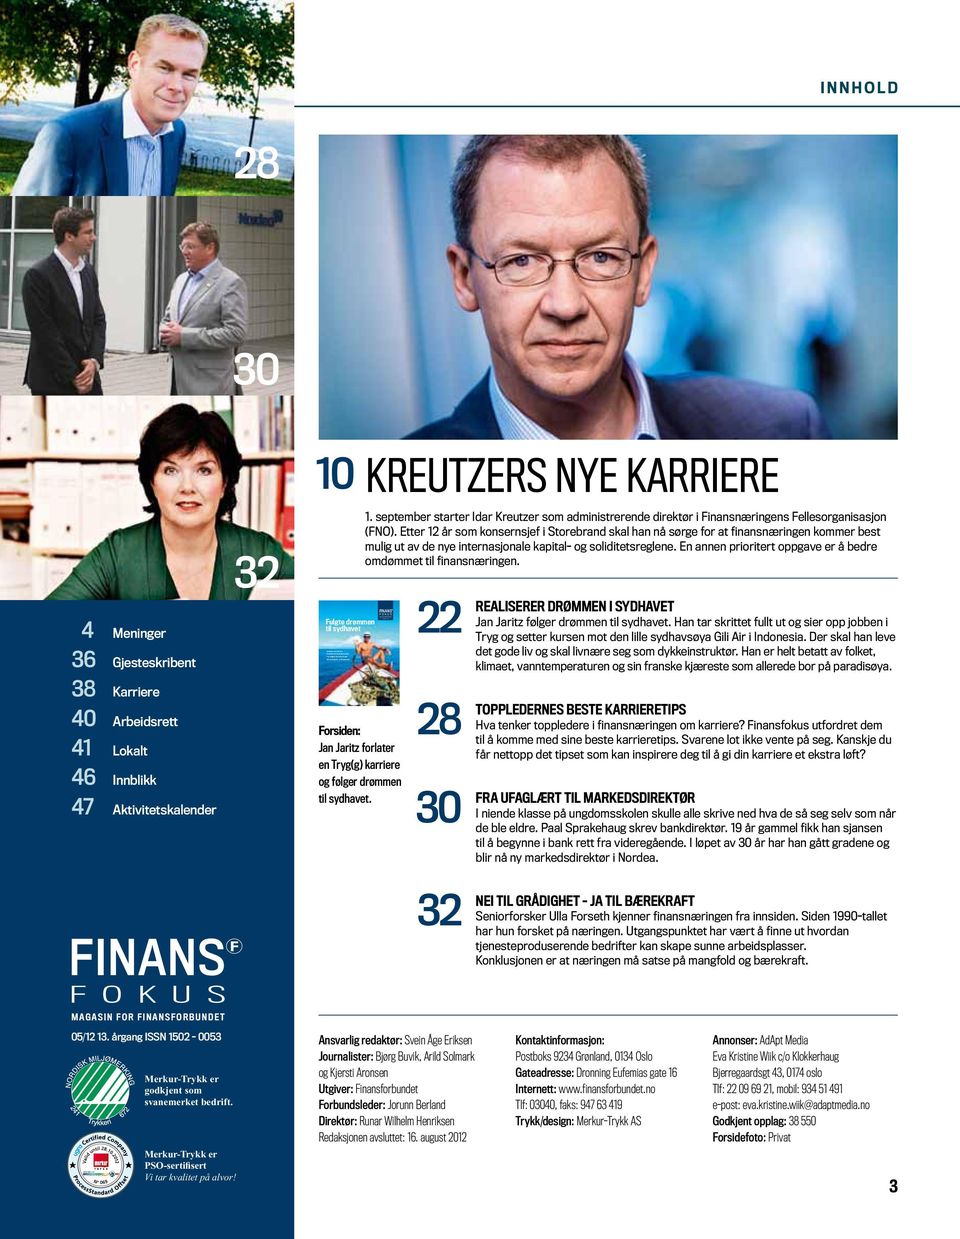 Meninger 36 Gjesteskribent 32 10 fulgte drømmen til sydhavet KREUTZERS NYE KARRIERE 1. september starter Idar Kreutzer som administrerende direktør i Finansnæringens Fellesorganisasjon (FNO).